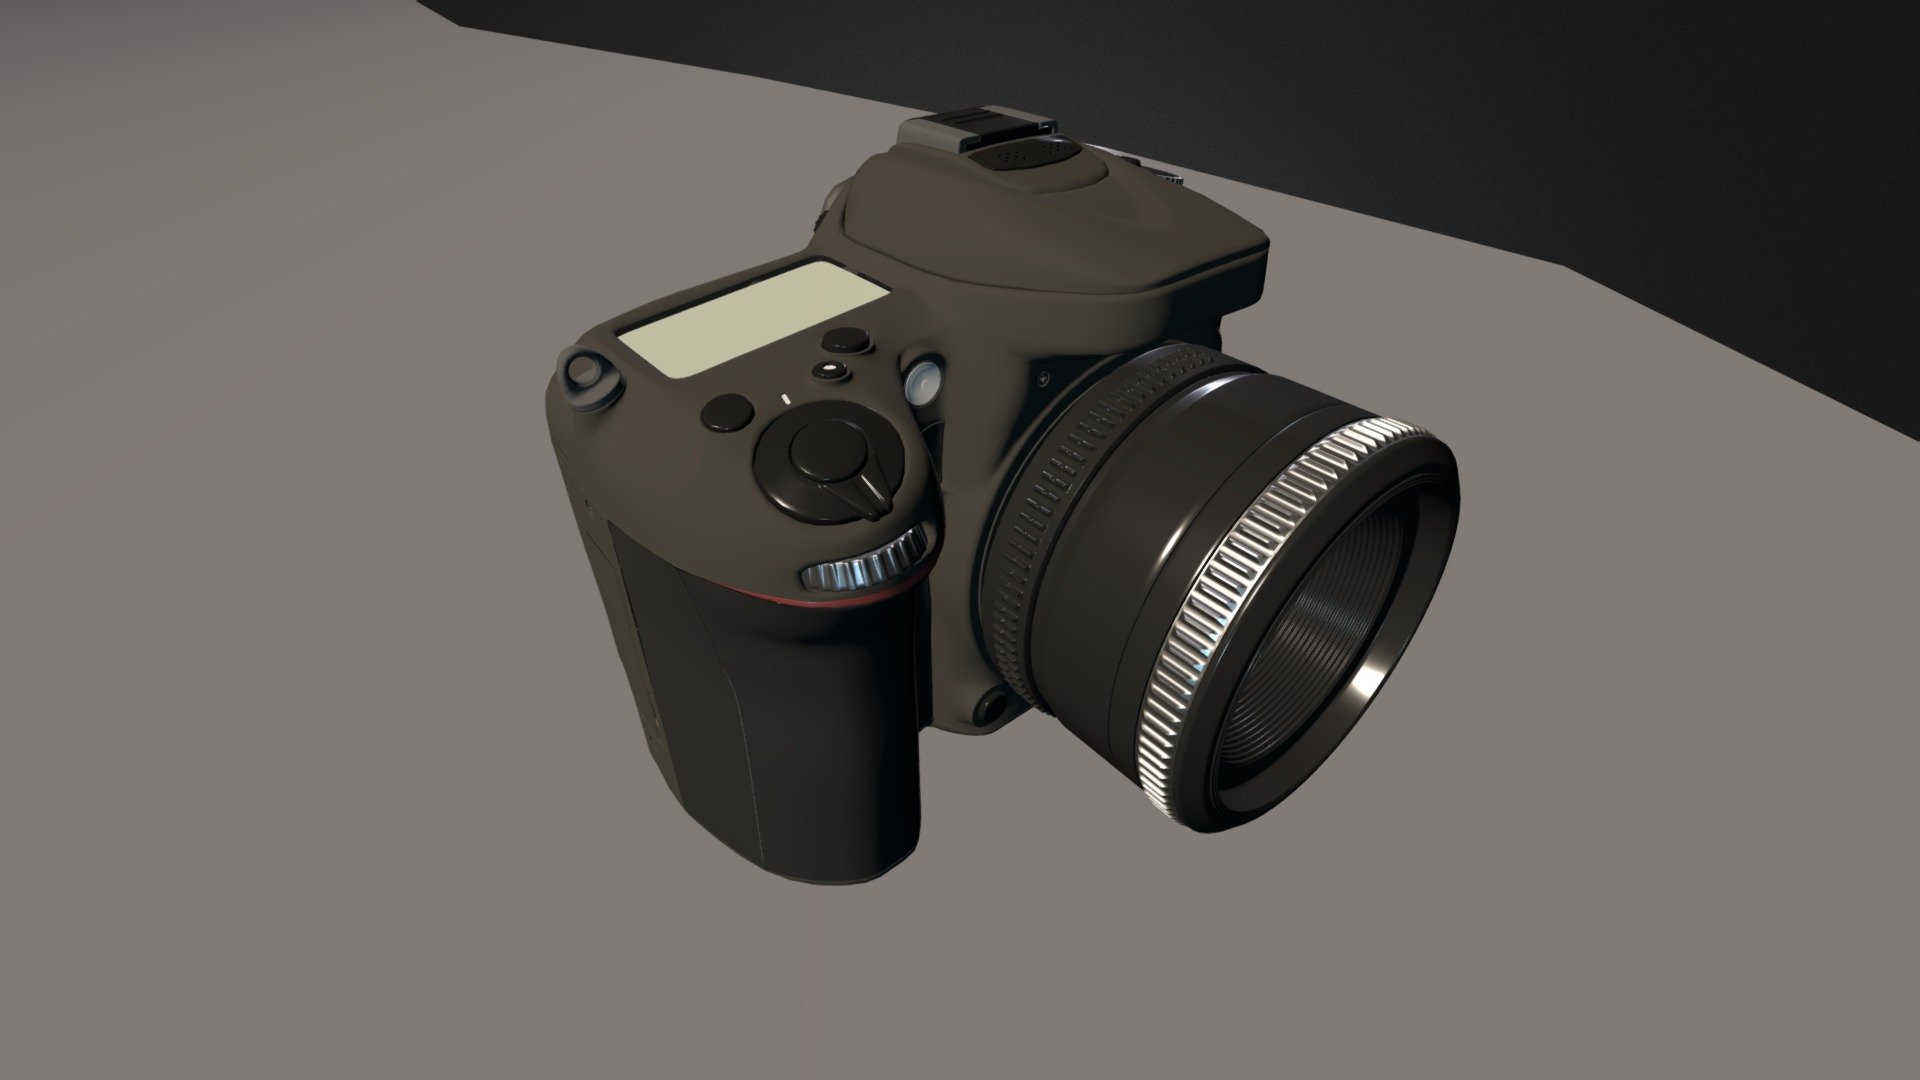 Nikon D7100 SLR Camera + Nikkor 50mm 1.8D Lens